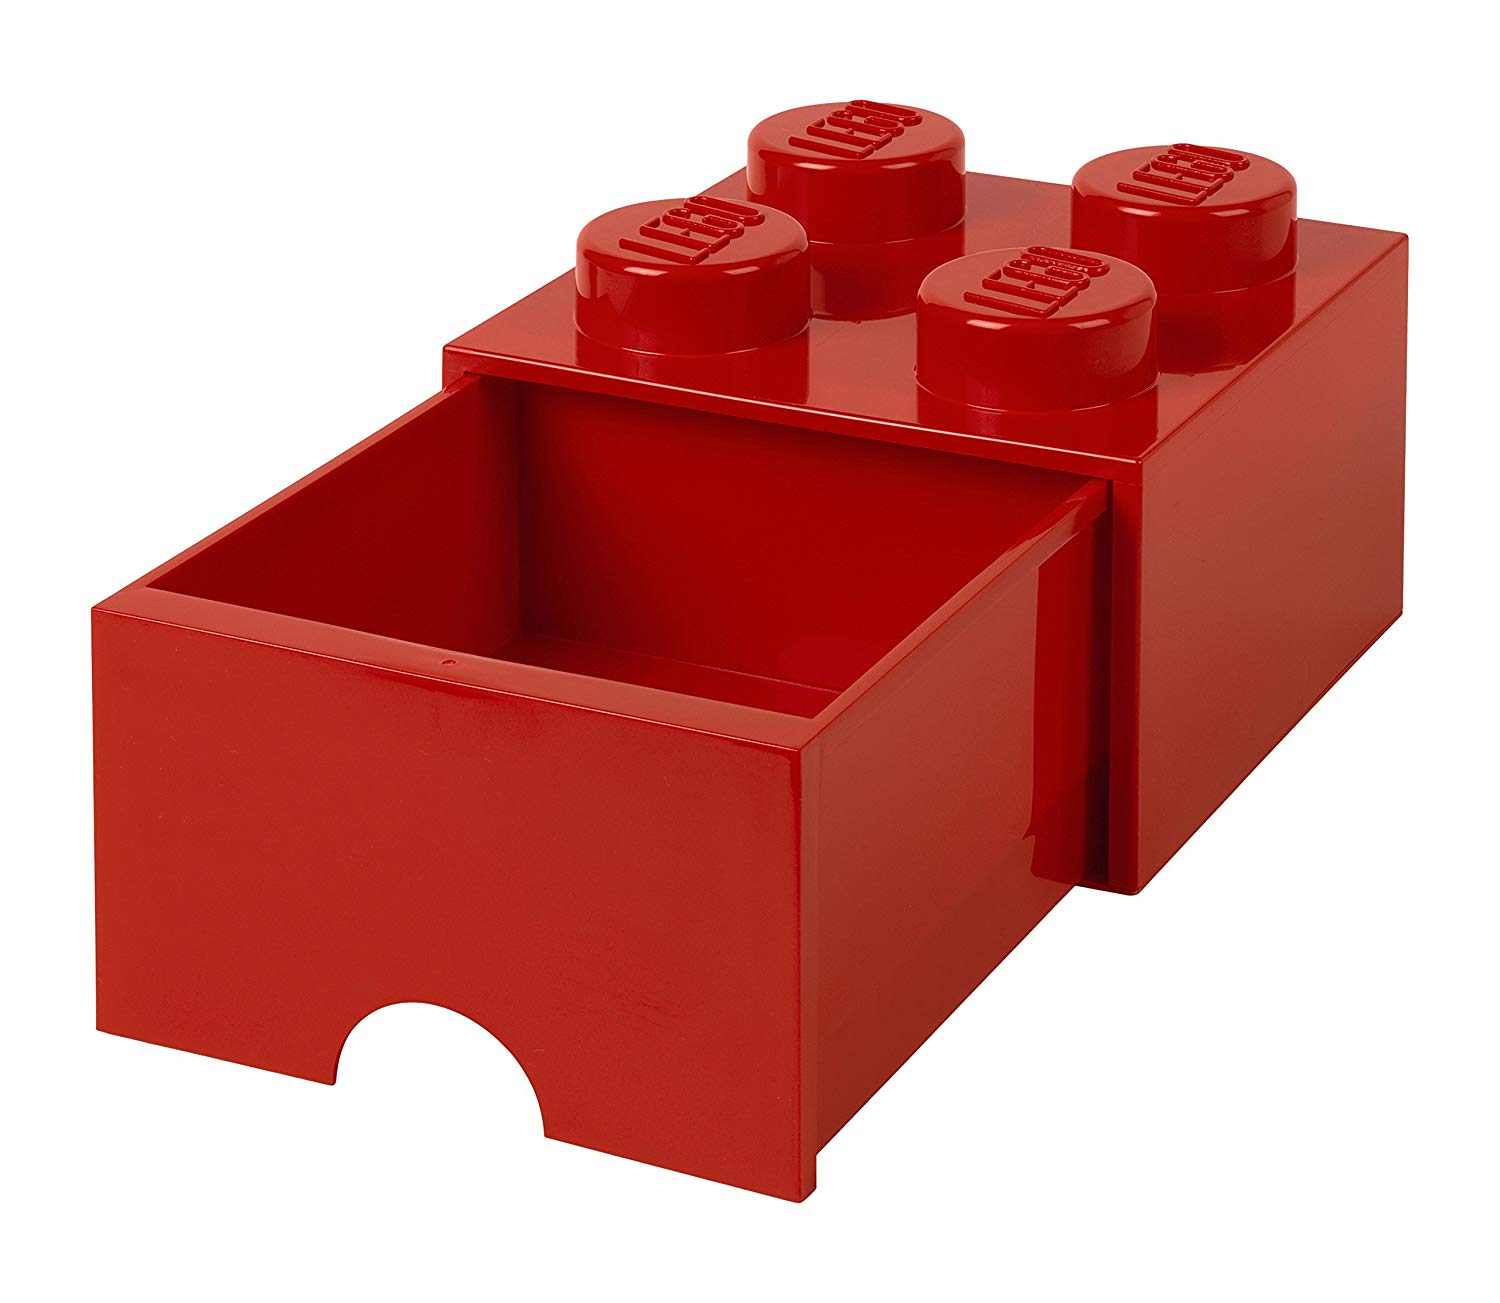 LEGO積木收納展示系列 經典方塊四抽屜盒 (鮮紅)